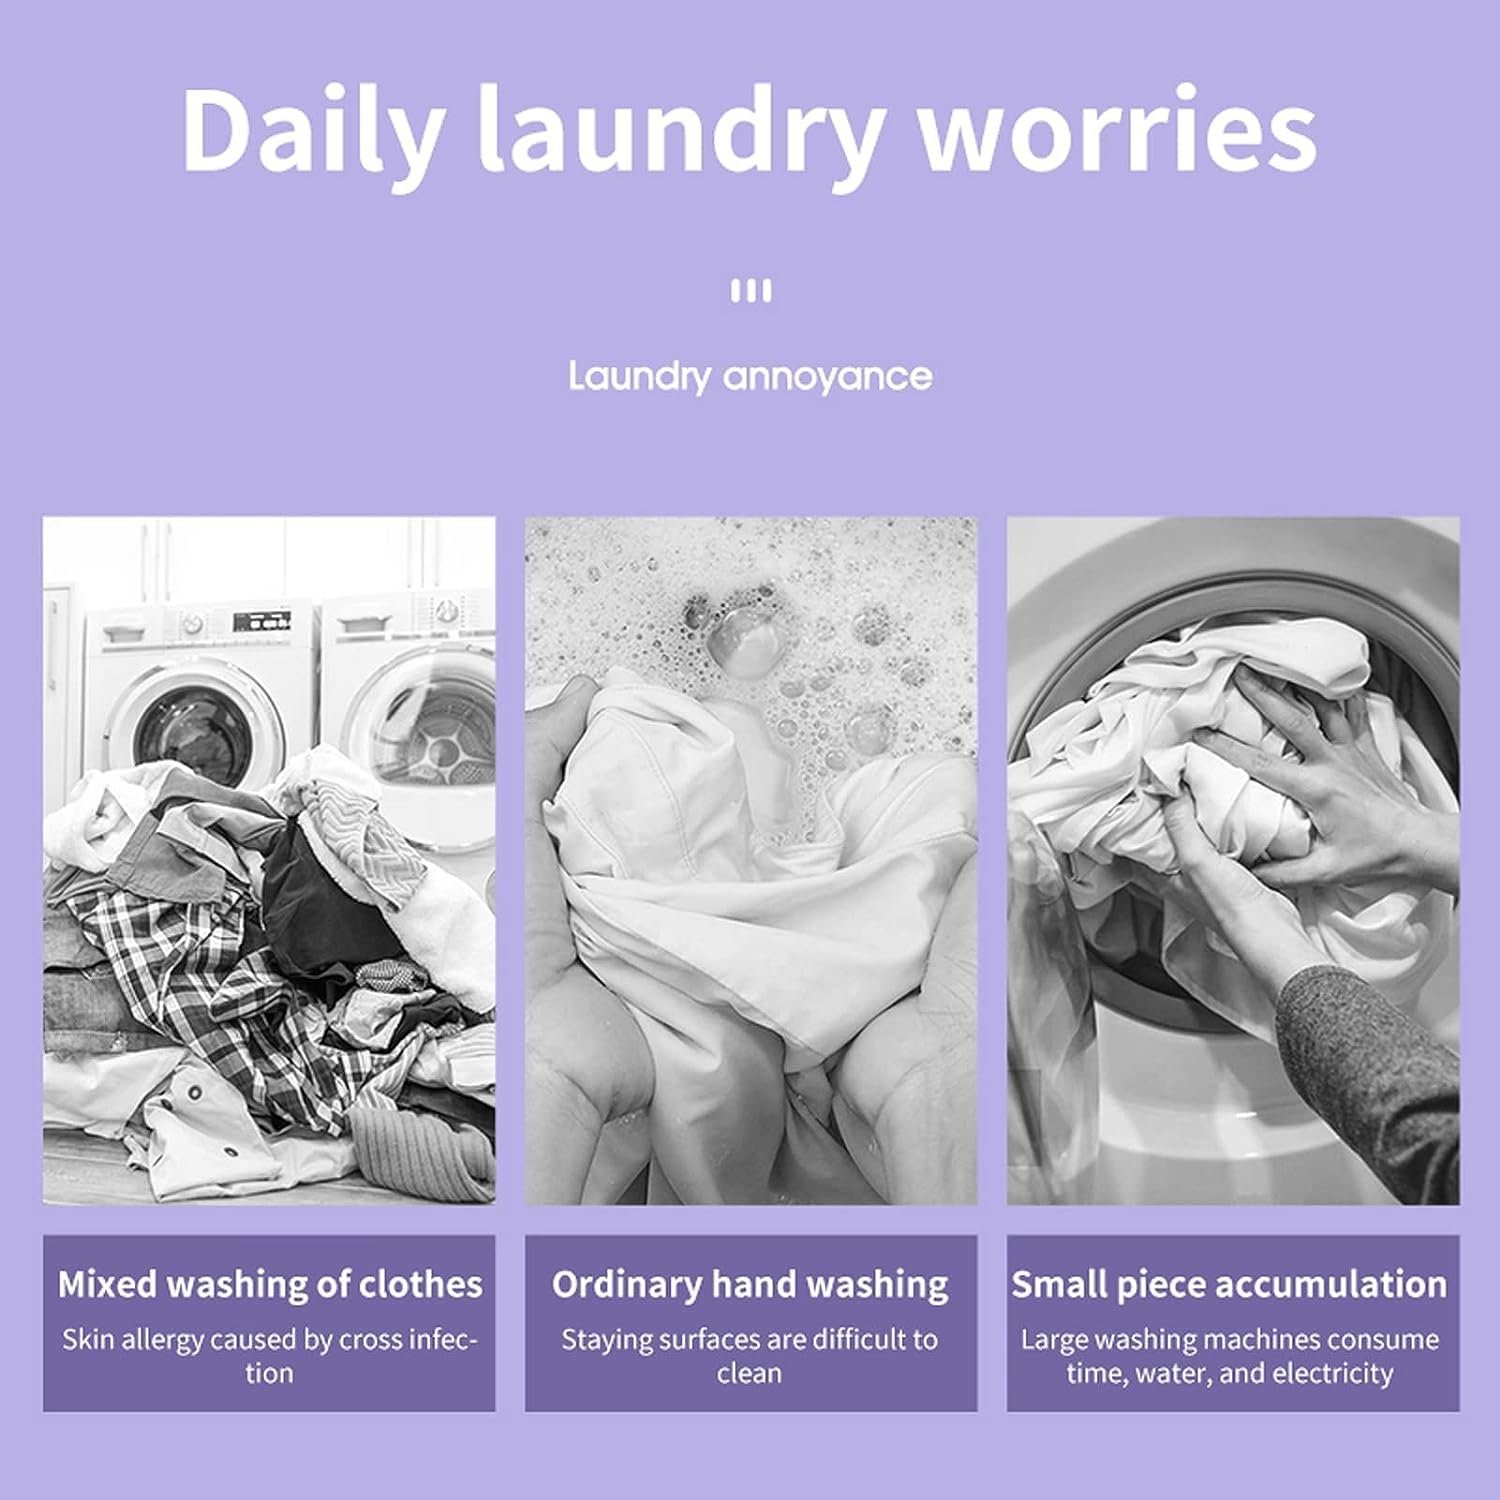 Mini Lila Waschmaschine Faltbare Wäscheschleuder,8L Welikera Wohnmobil,Reisen Wäscheschleuder für